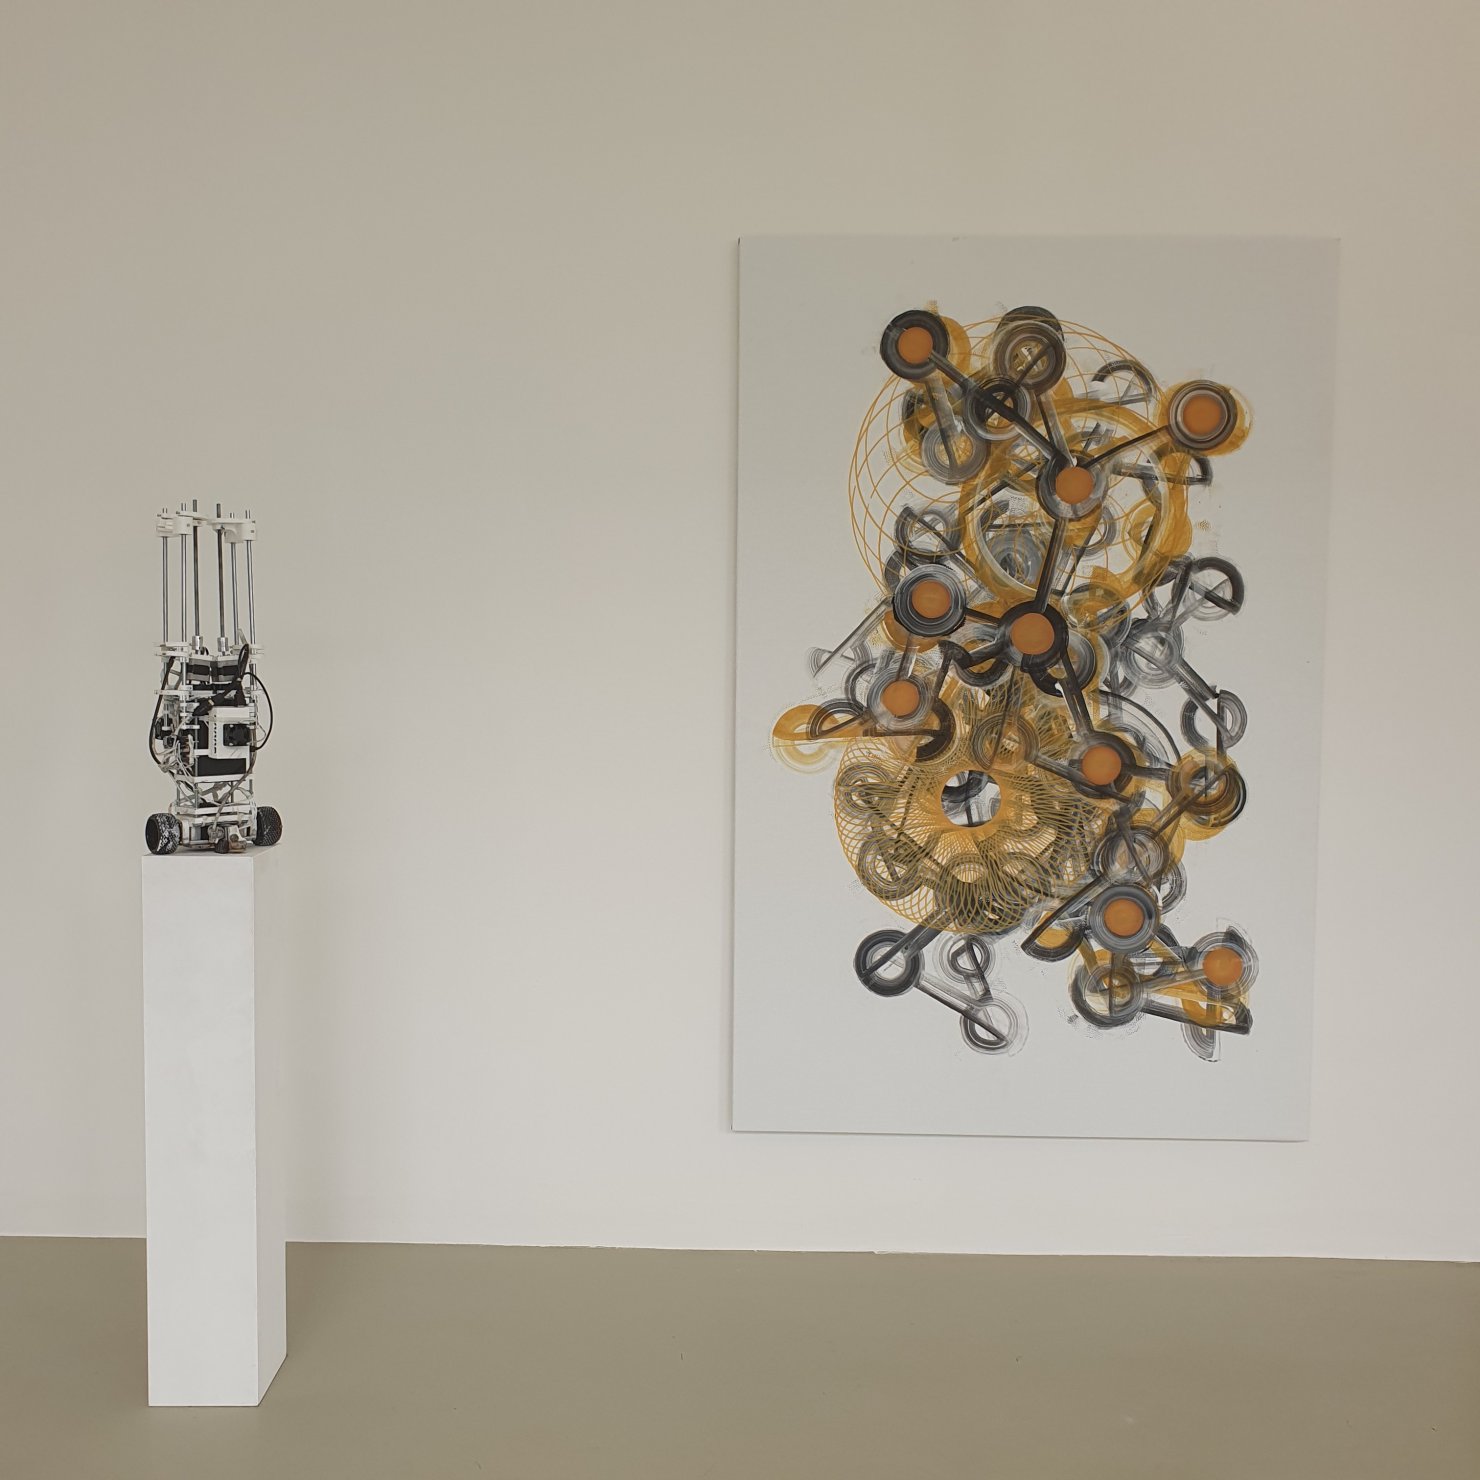 Installation image for Niki Passath: Assemblisms, at Lukas Feichtner Galerie